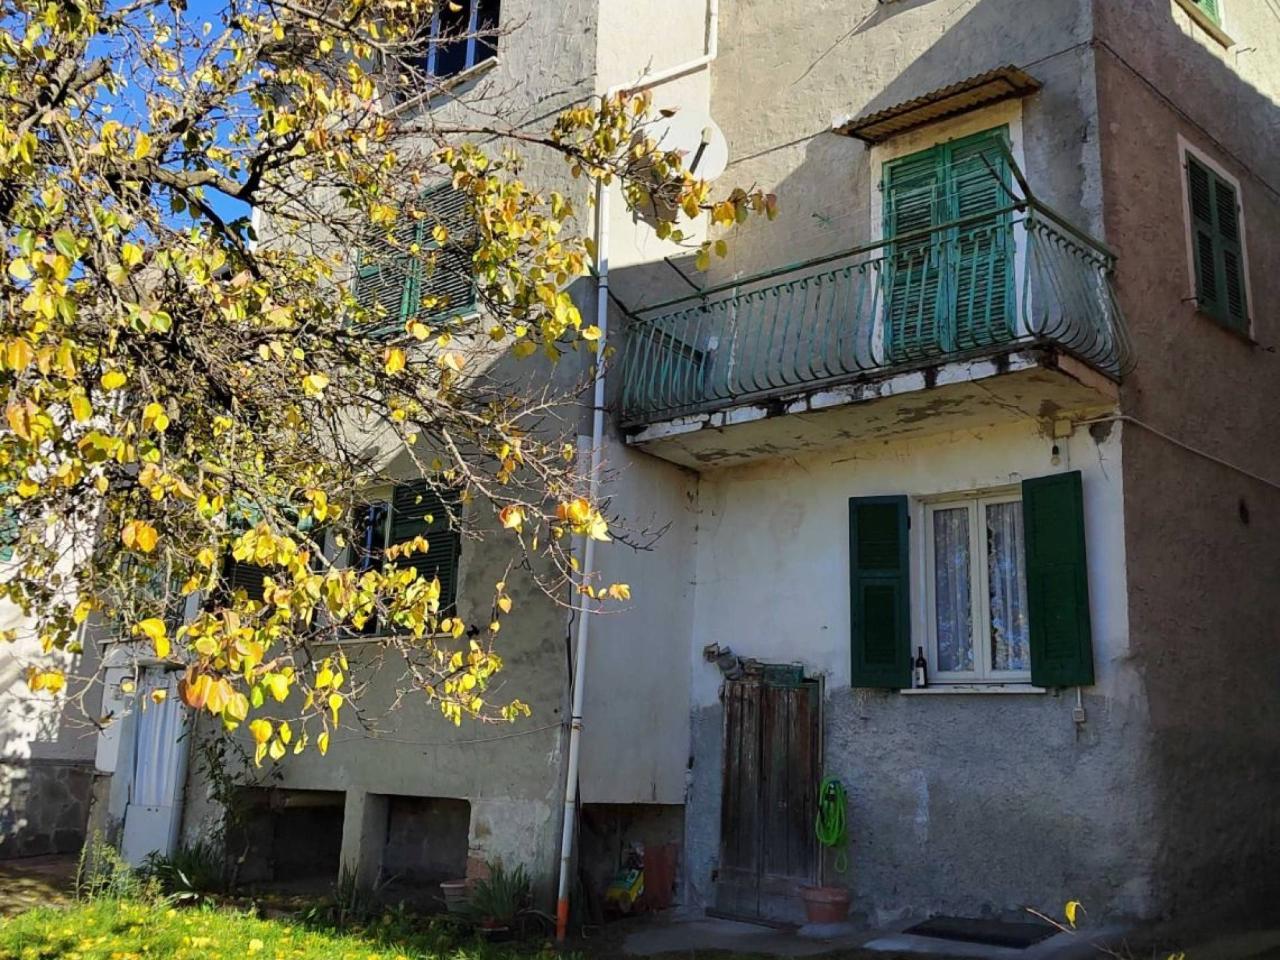 Casa indipendente in vendita a Parodi Ligure